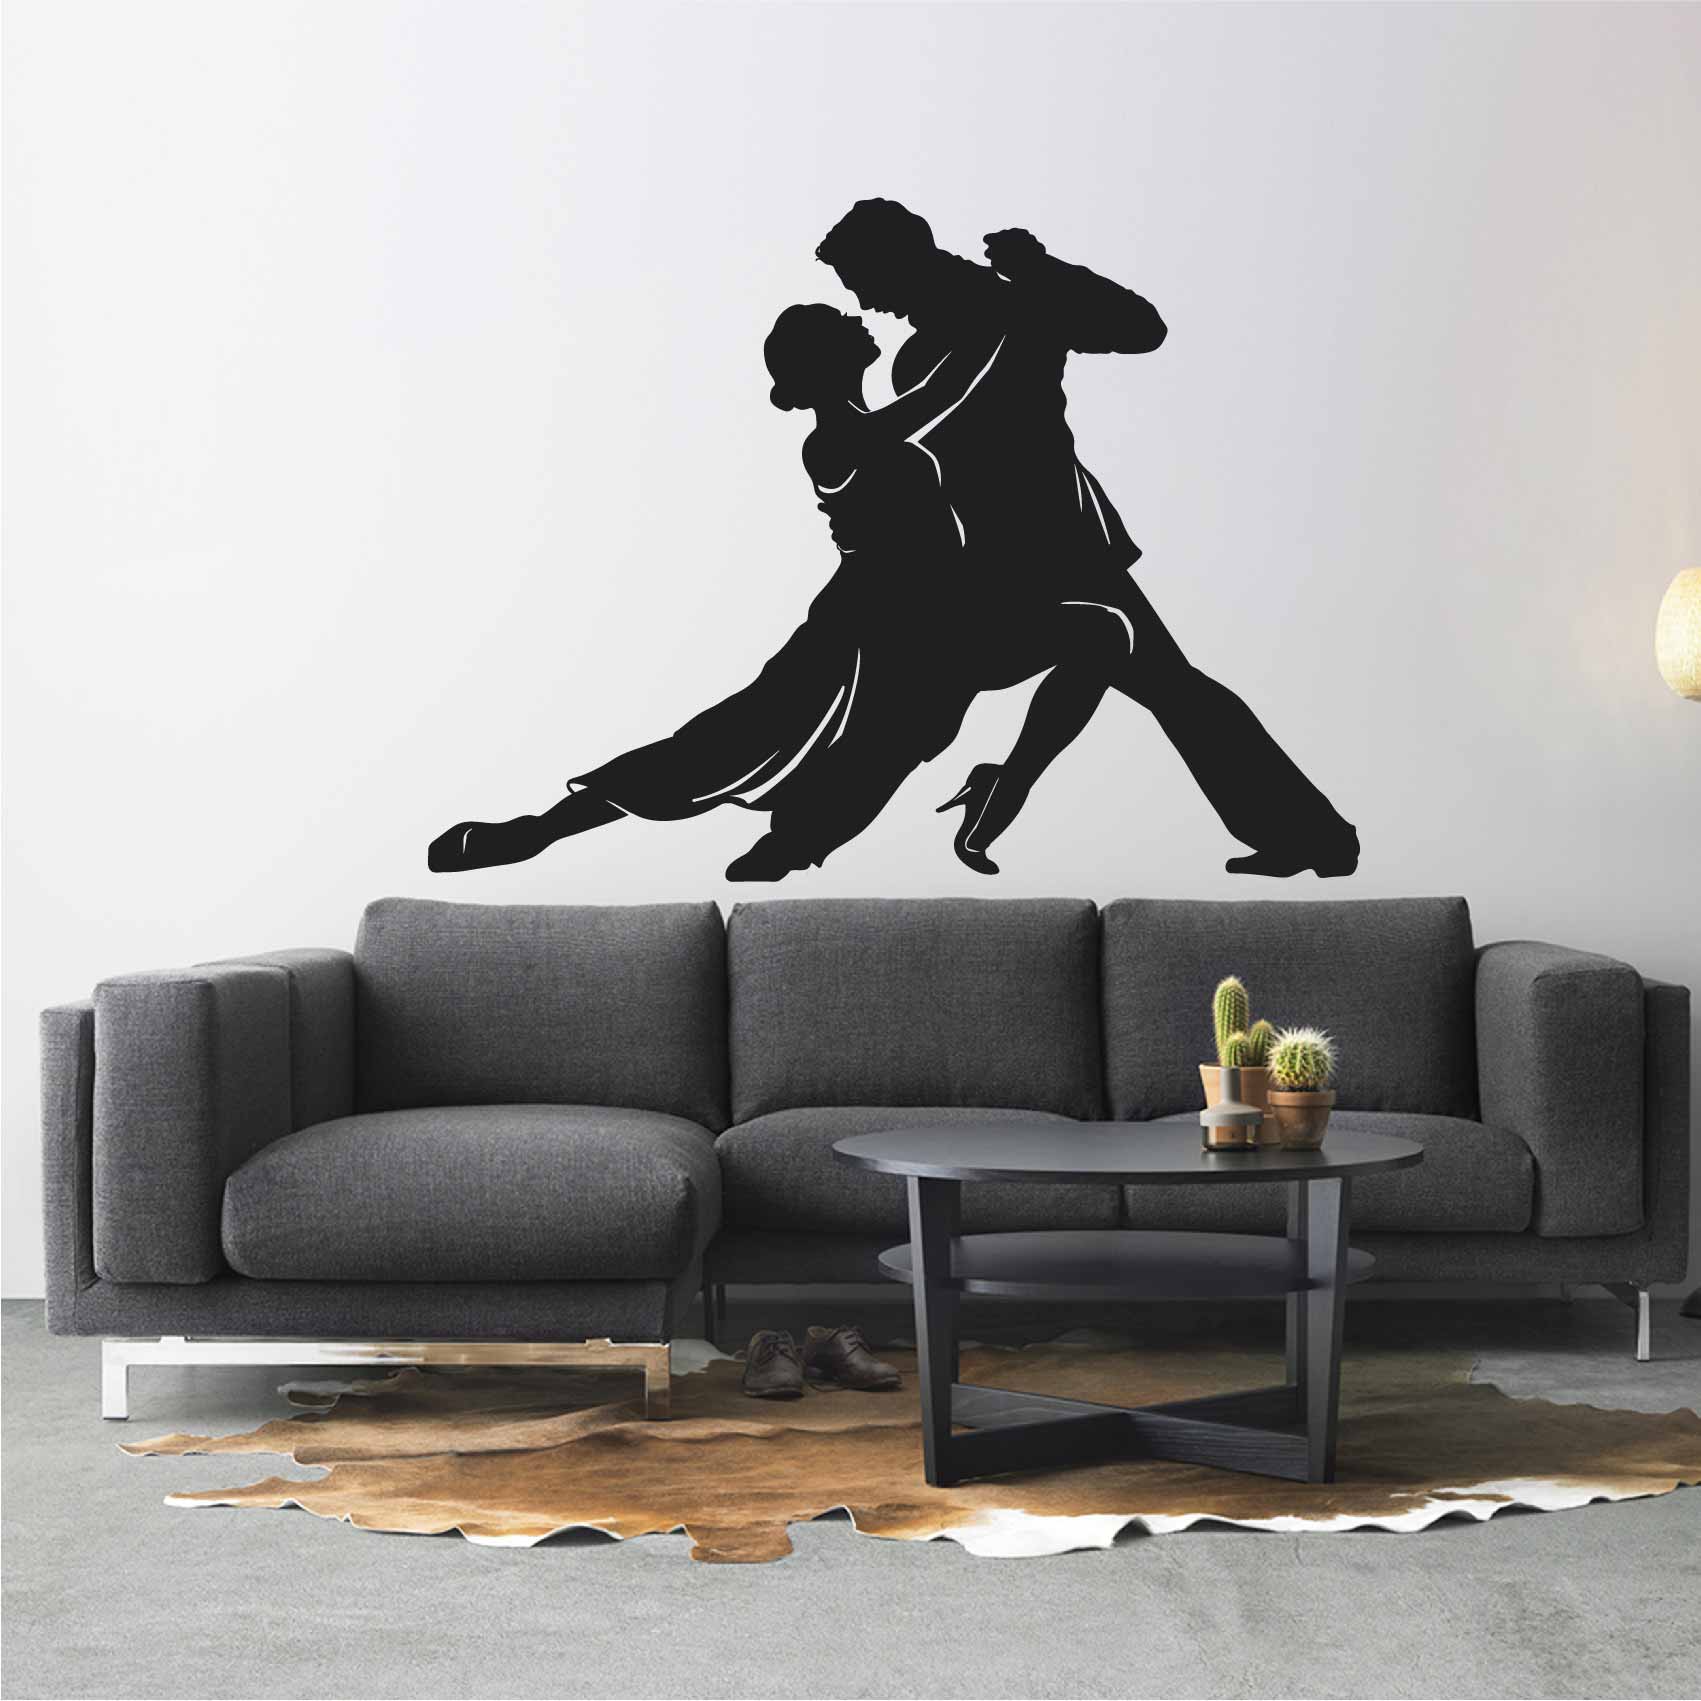 stickers-tango-ref34silhouette-stickers-muraux-silhouette-autocollant-chambre-salon-sticker-mural-ombre